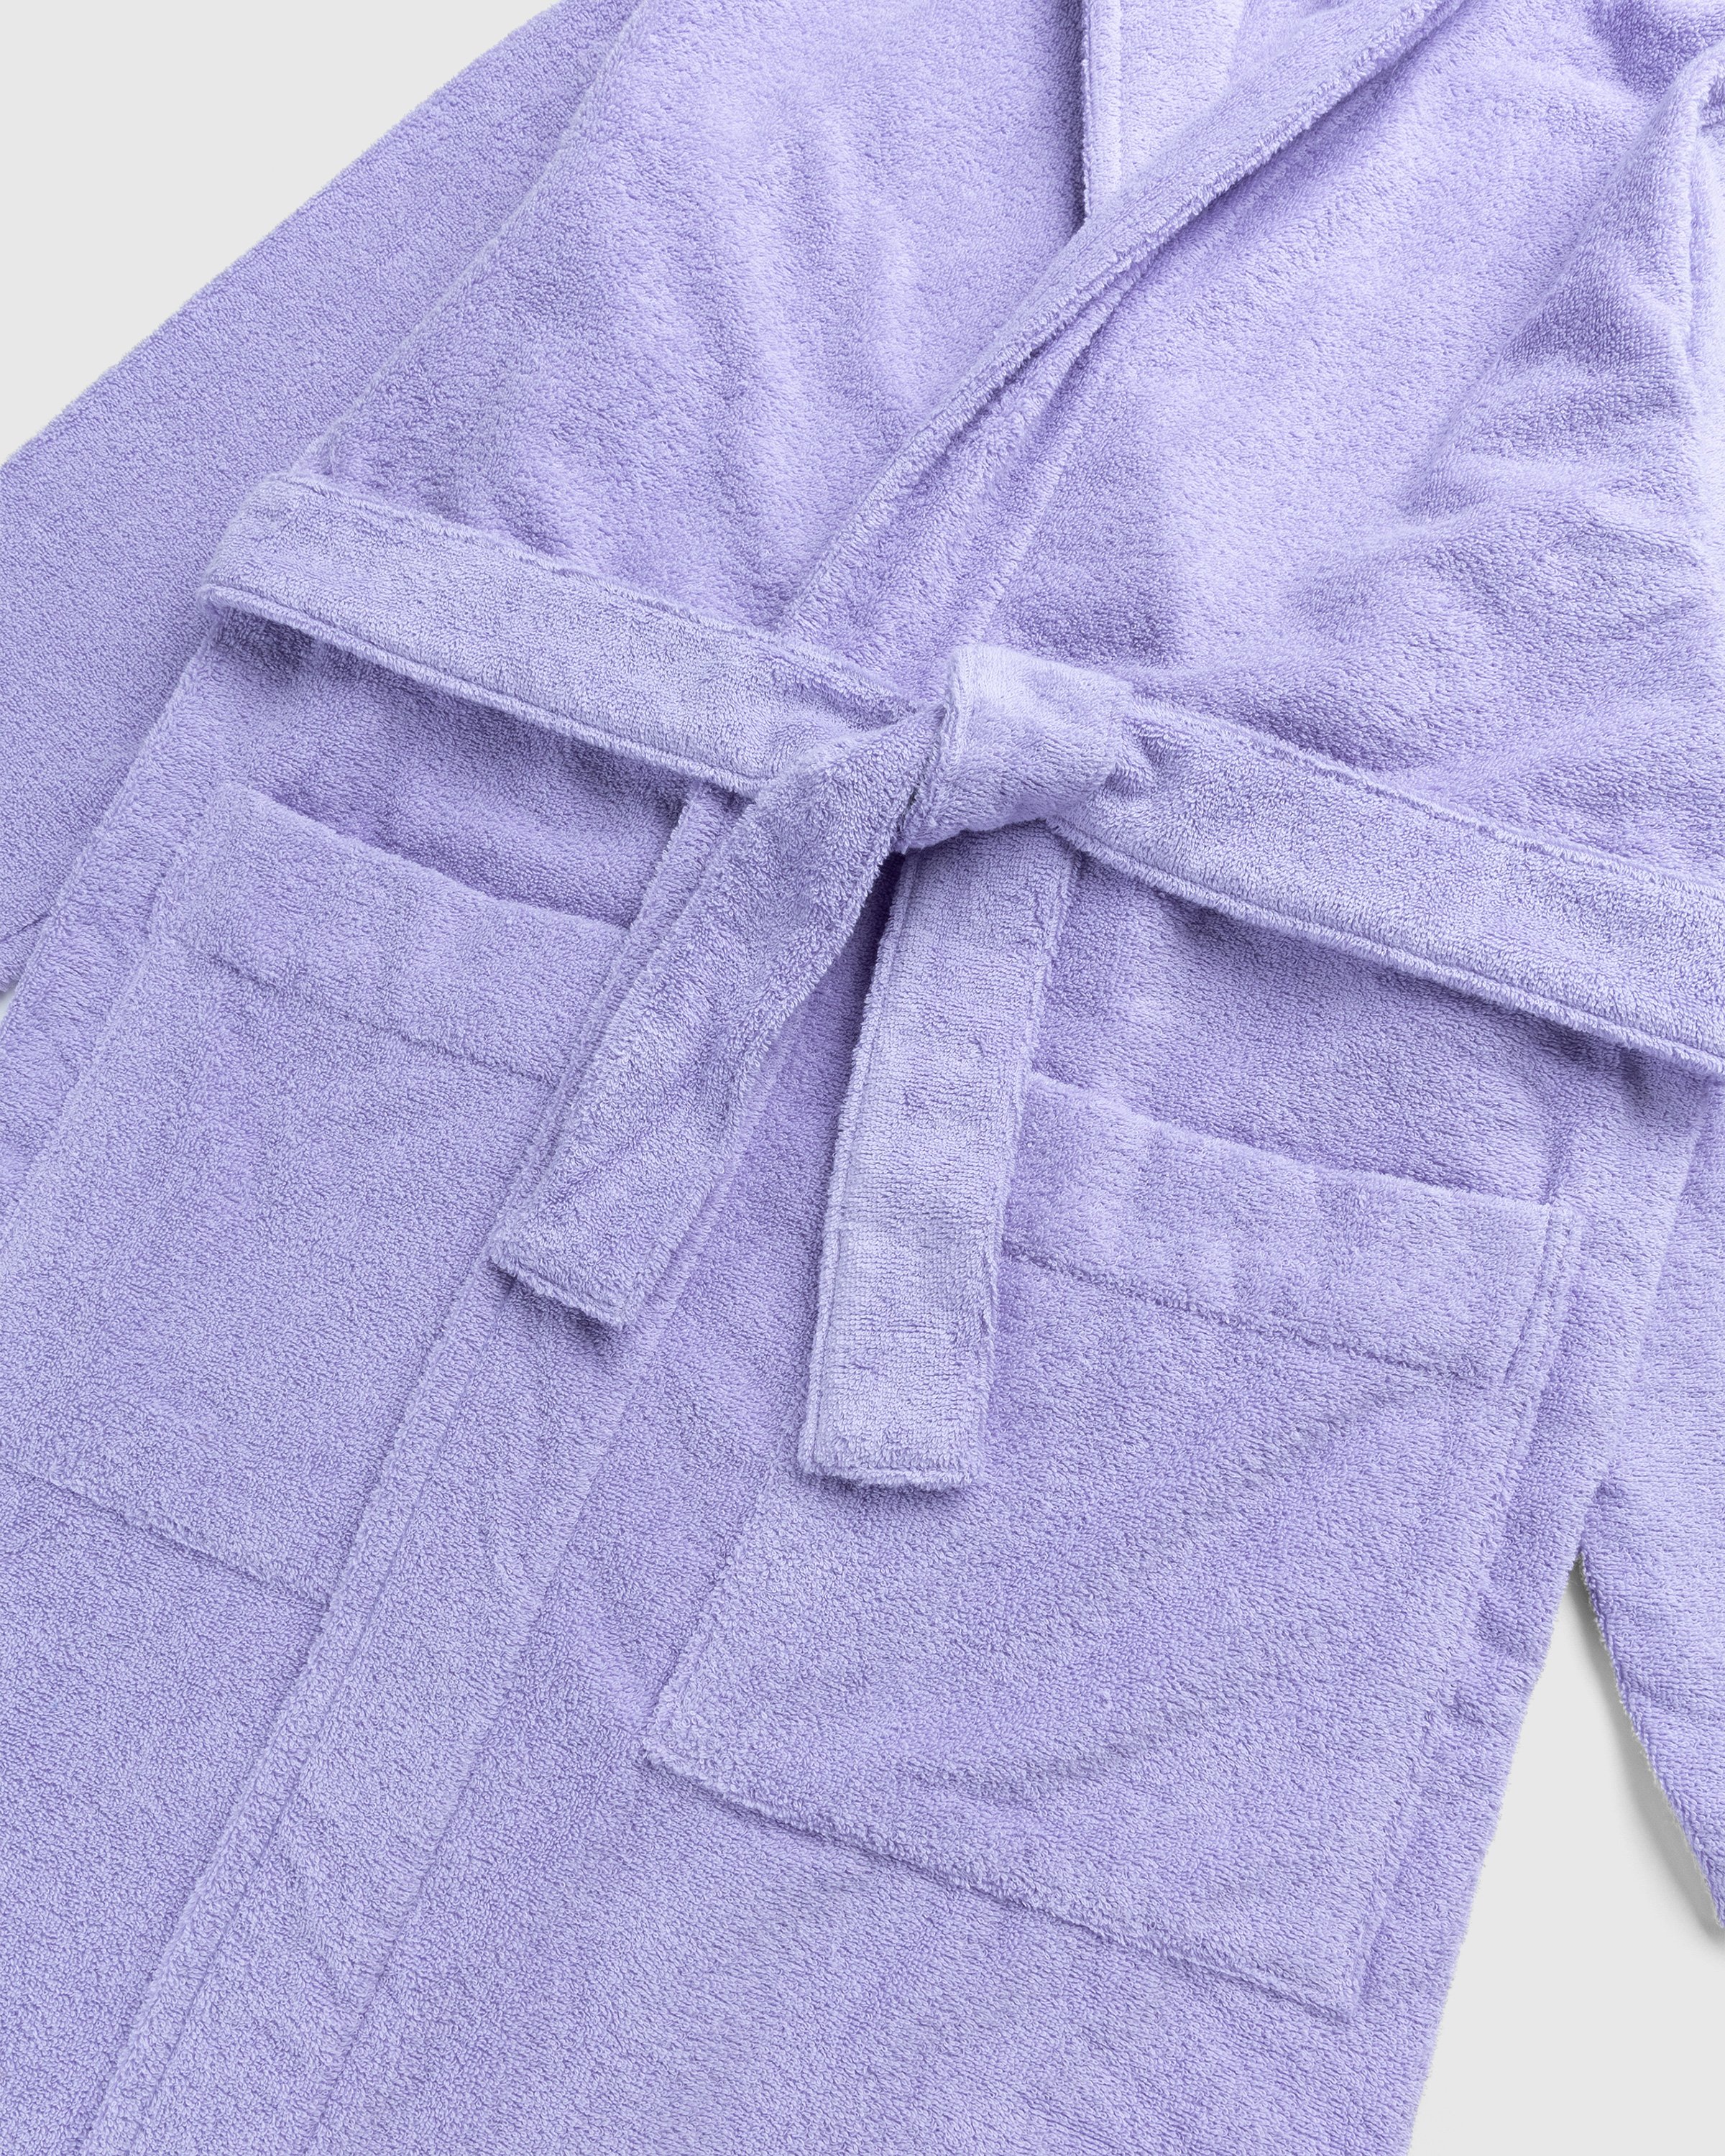 Tekla - Hooded Bathrobe Solid Lavender - Lifestyle - Purple - Image 5